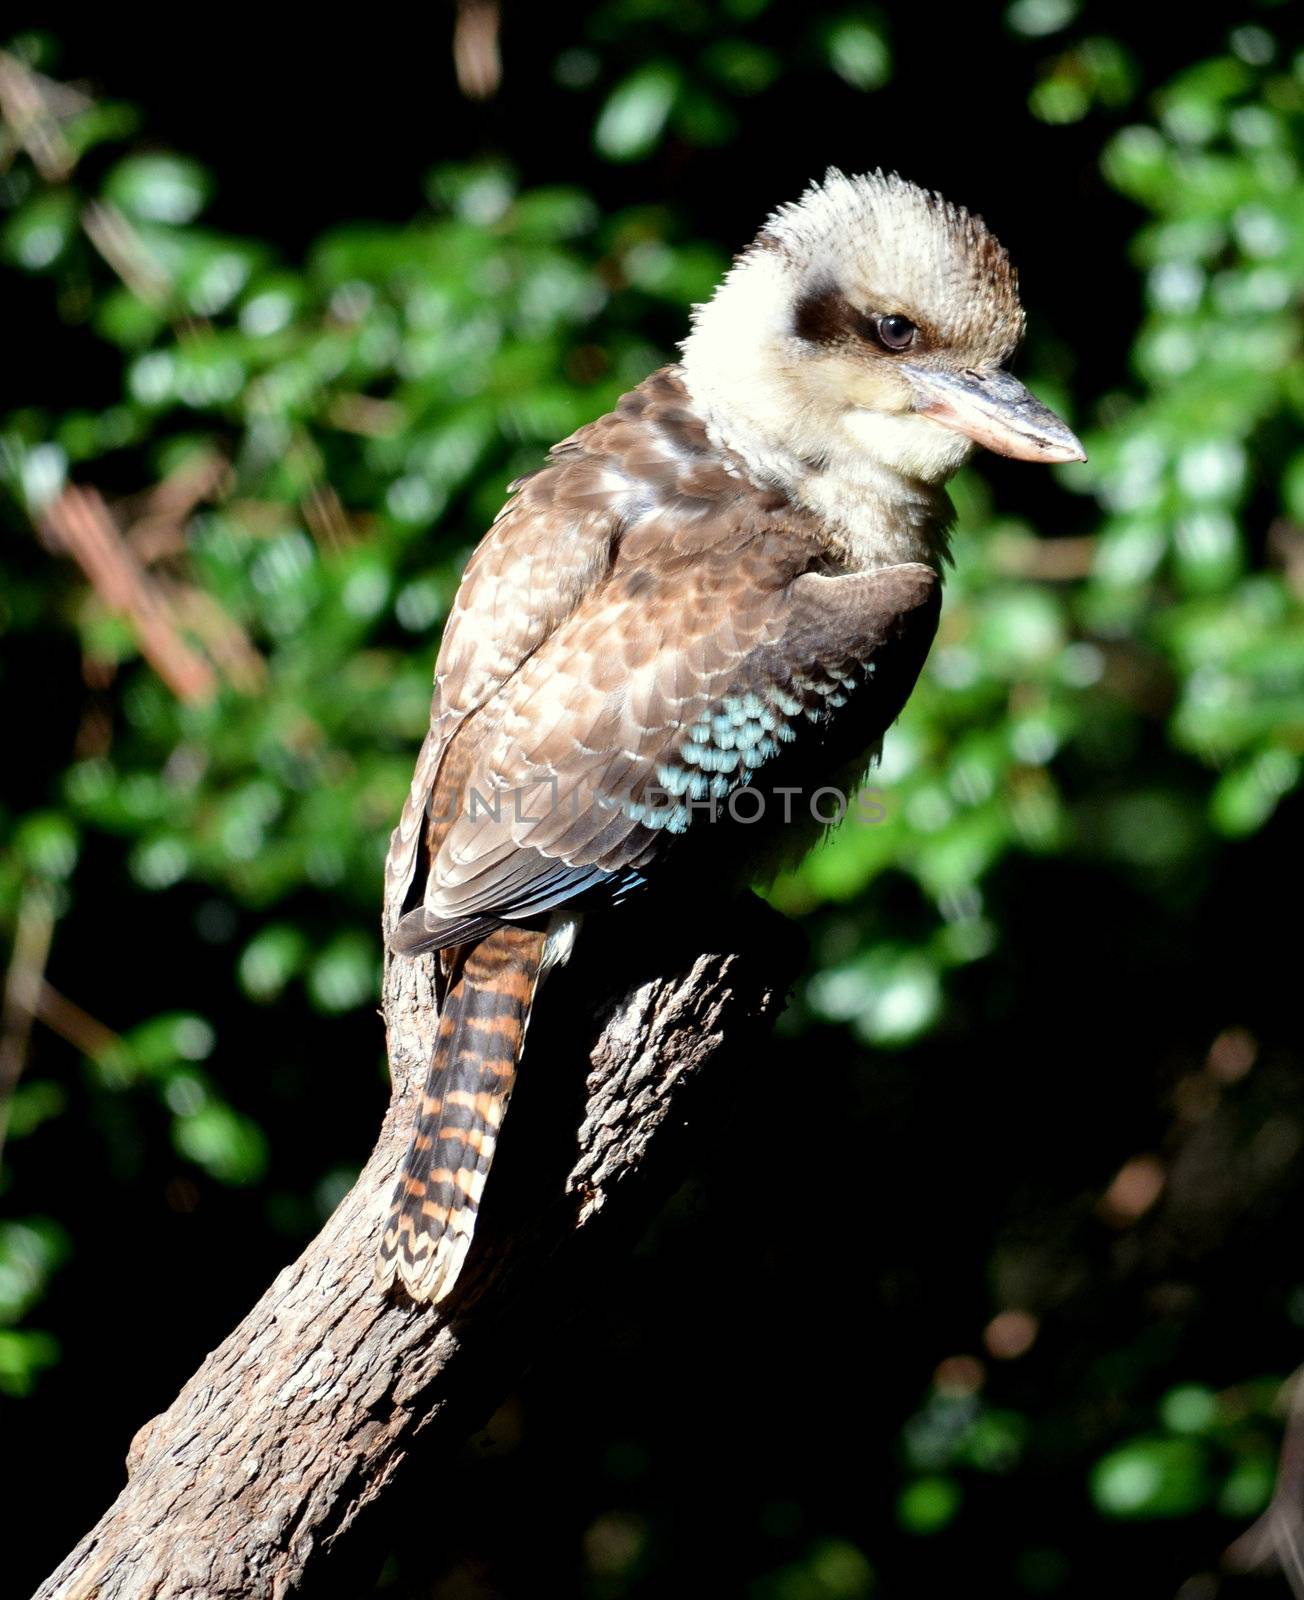 Australian Kookaburra by KirbyWalkerPhotos